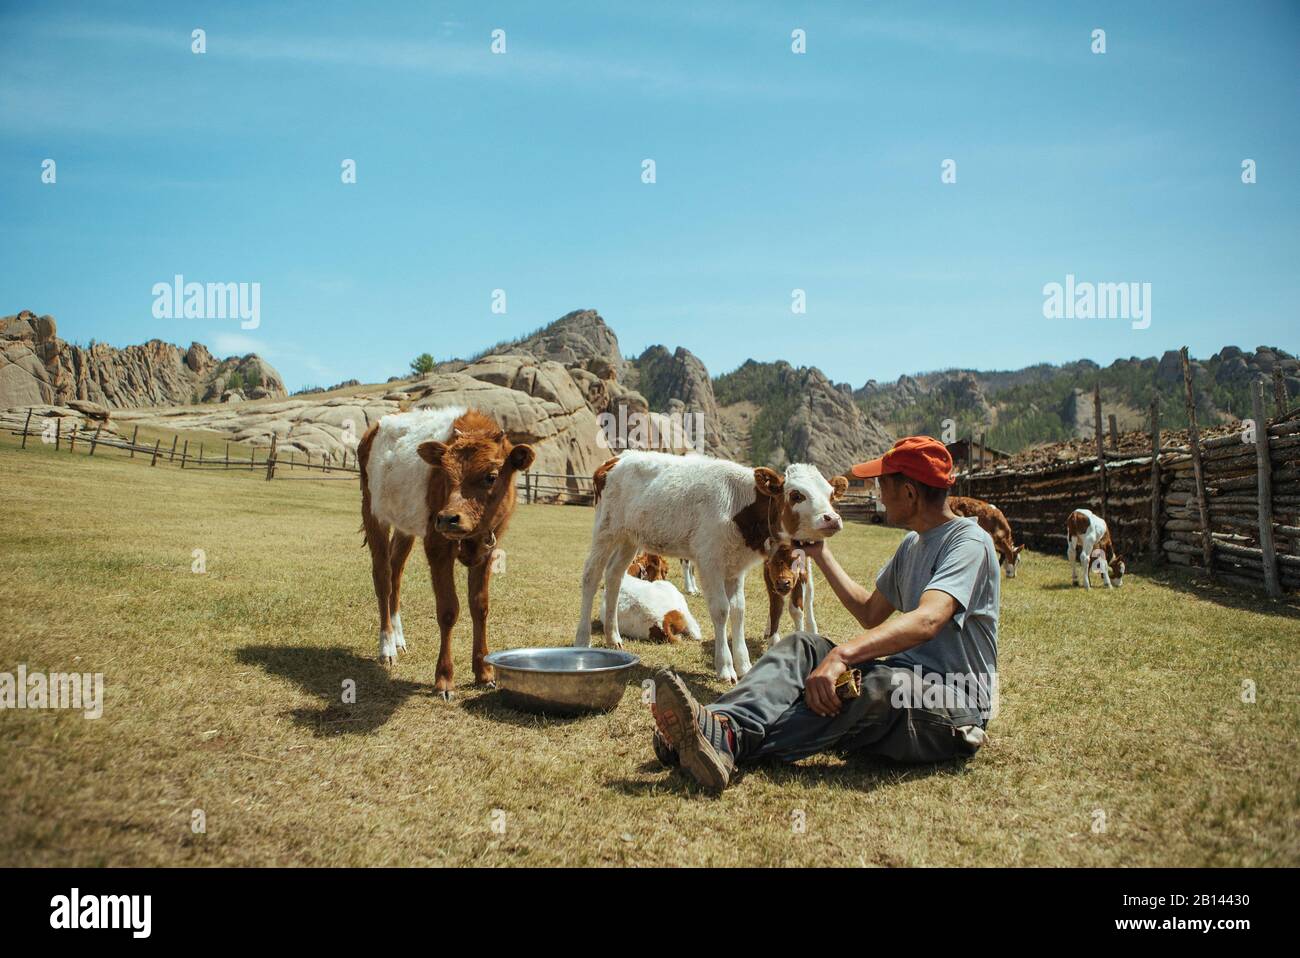 Herdsman stroking calves on a paddock, Mongolian Switzerland, Gobi Desert, Mongolia Stock Photo